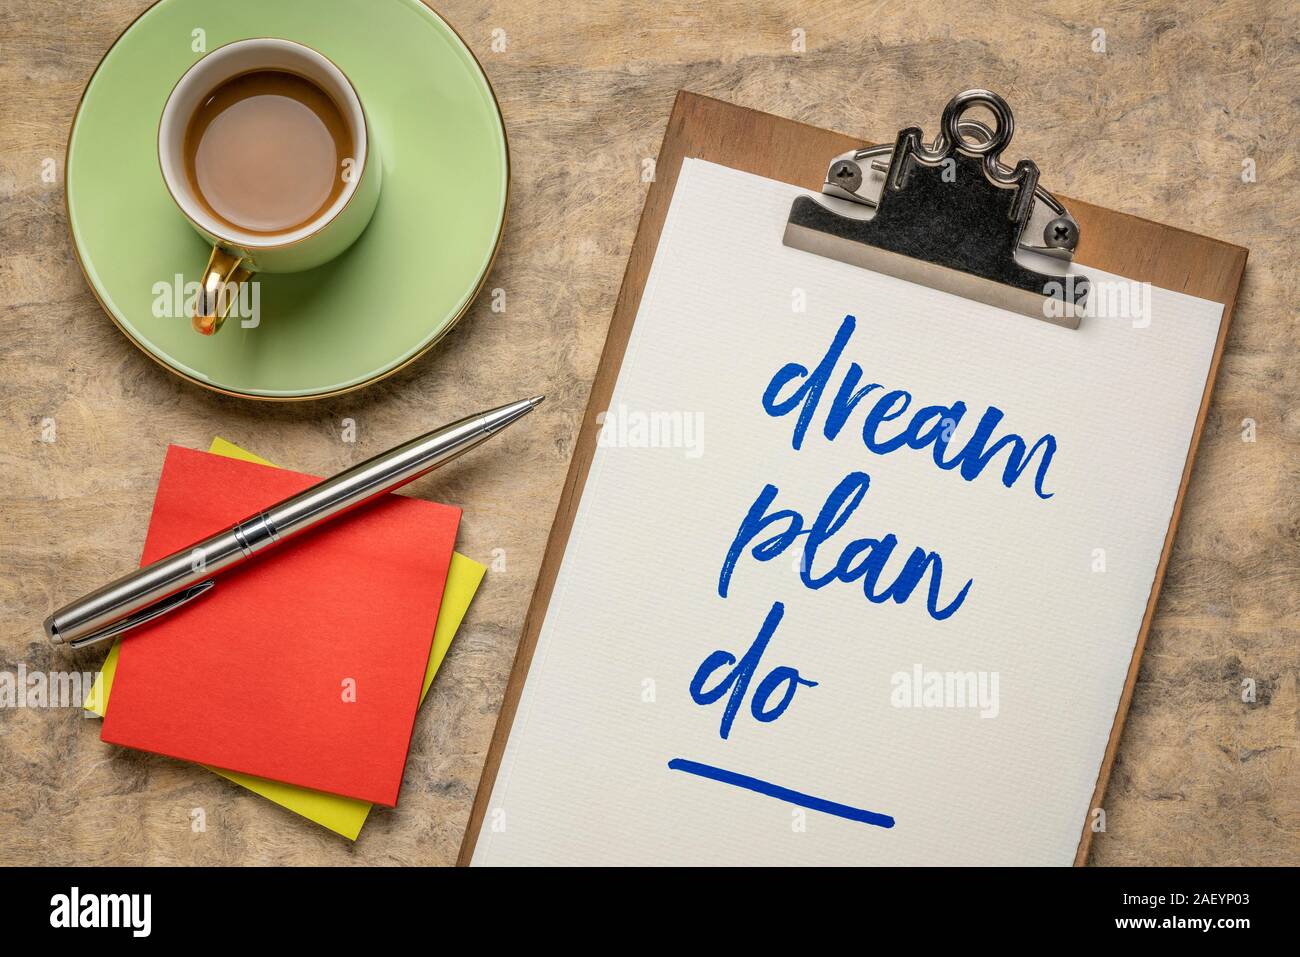 Träumen, Planen, Tun - Handschrift auf einem Klemmbrett mit einer Tasse Kaffee. Inspirational Phrase für die persönliche Entwicklung, Selbstverbesserung, Bildung, Busin Stockfoto